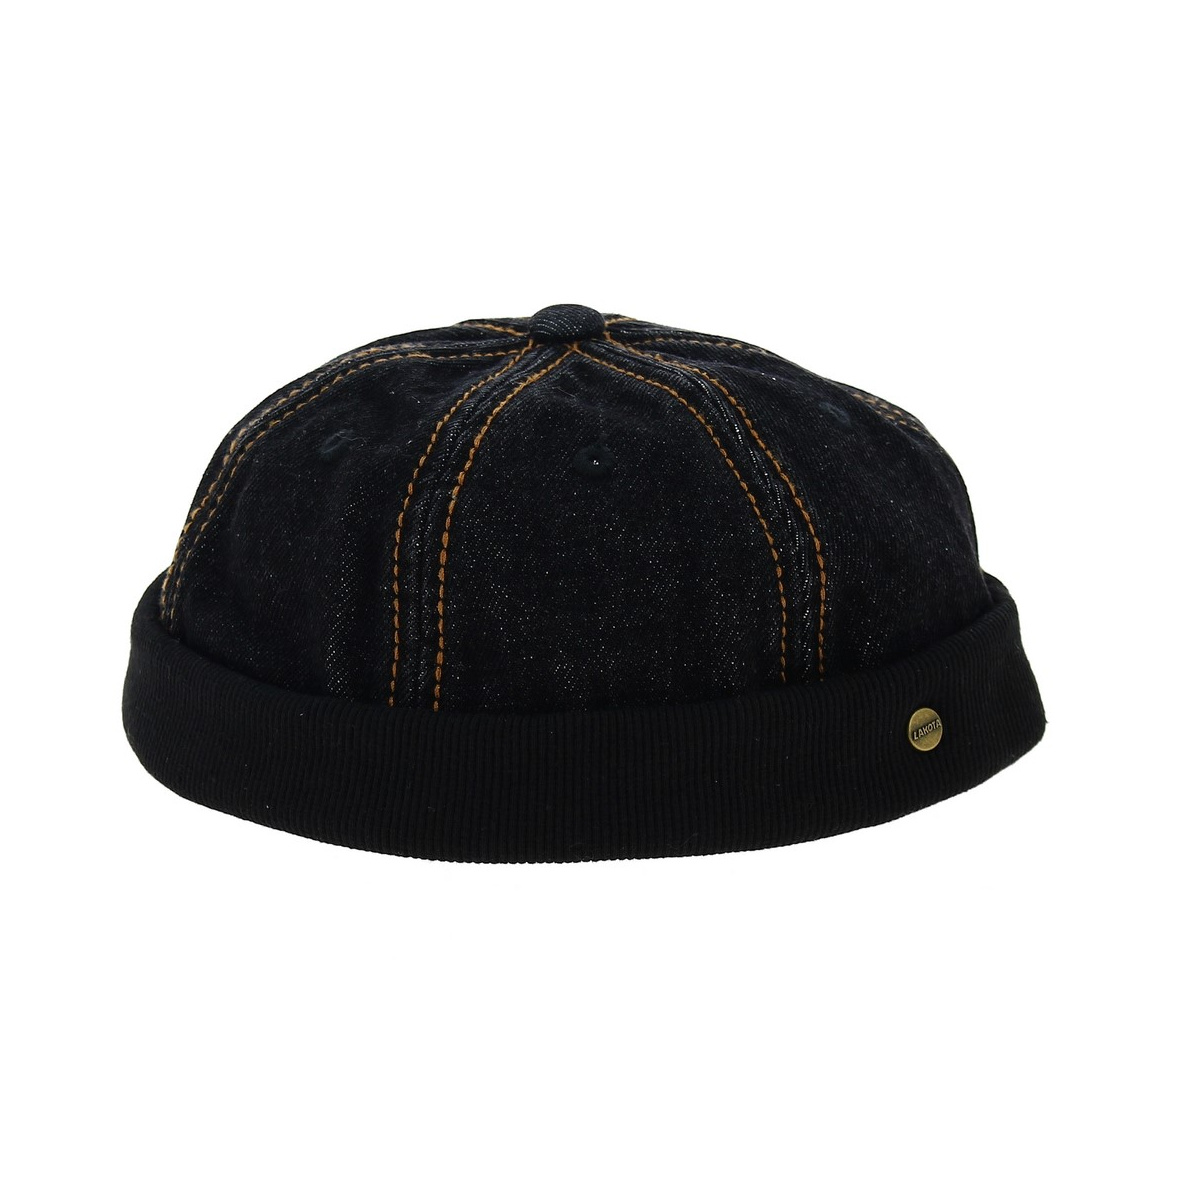 bonnet docker - Cap without visor jean black Reference : 11806